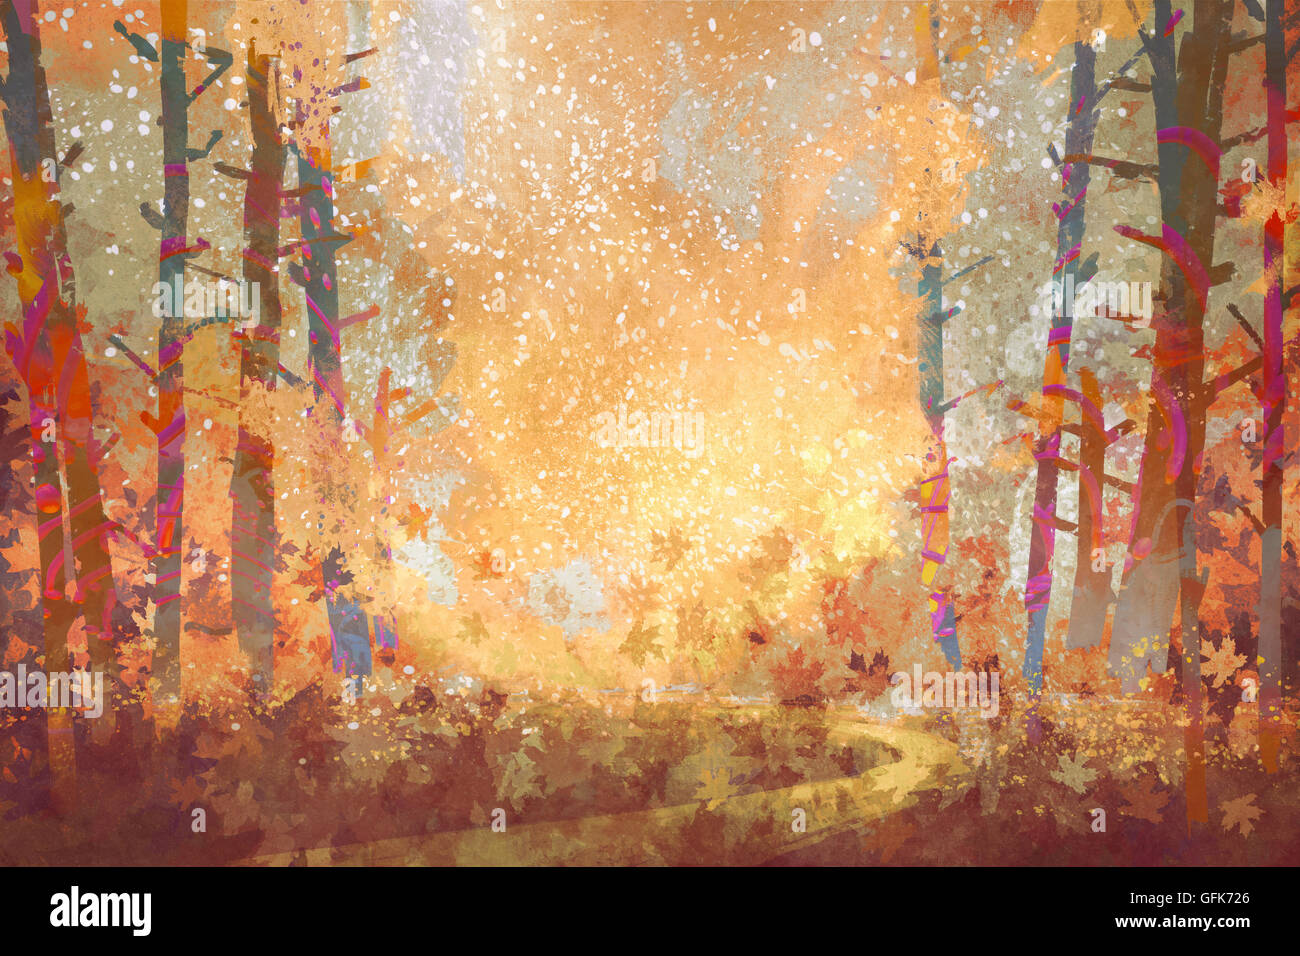 Sentier en forêt d'automne,Peinture,illustration Banque D'Images